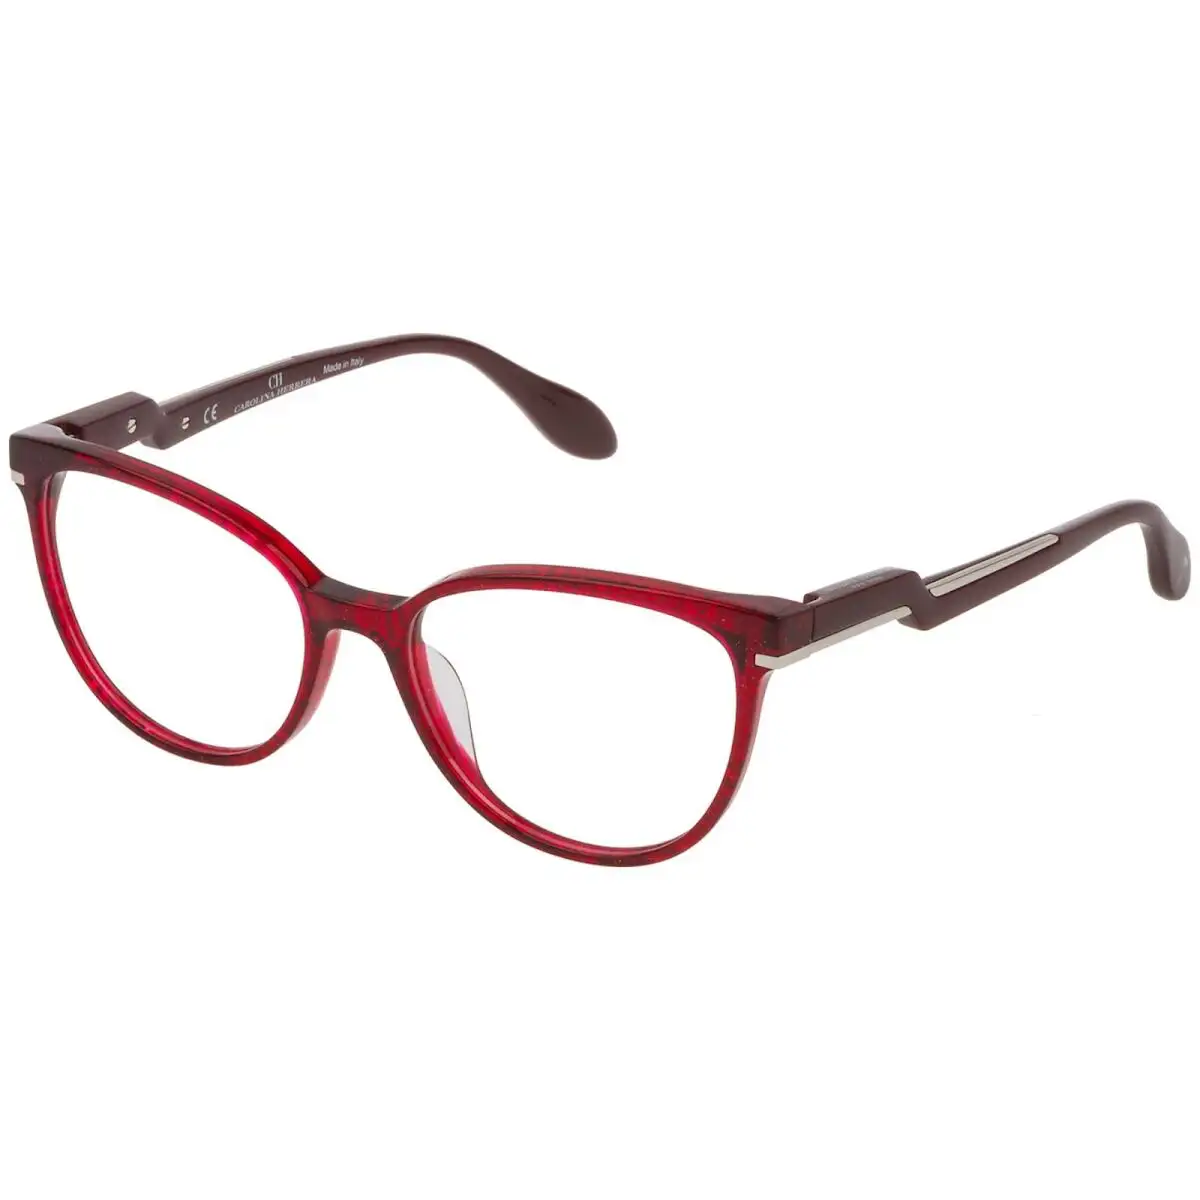 Monture de lunettes femme carolina herrera vhn591m 5305ac marron_2223. DIAYTAR SENEGAL - Votre Passage vers le Chic et l'Élégance. Naviguez à travers notre boutique en ligne pour trouver des produits qui ajoutent une touche sophistiquée à votre style.